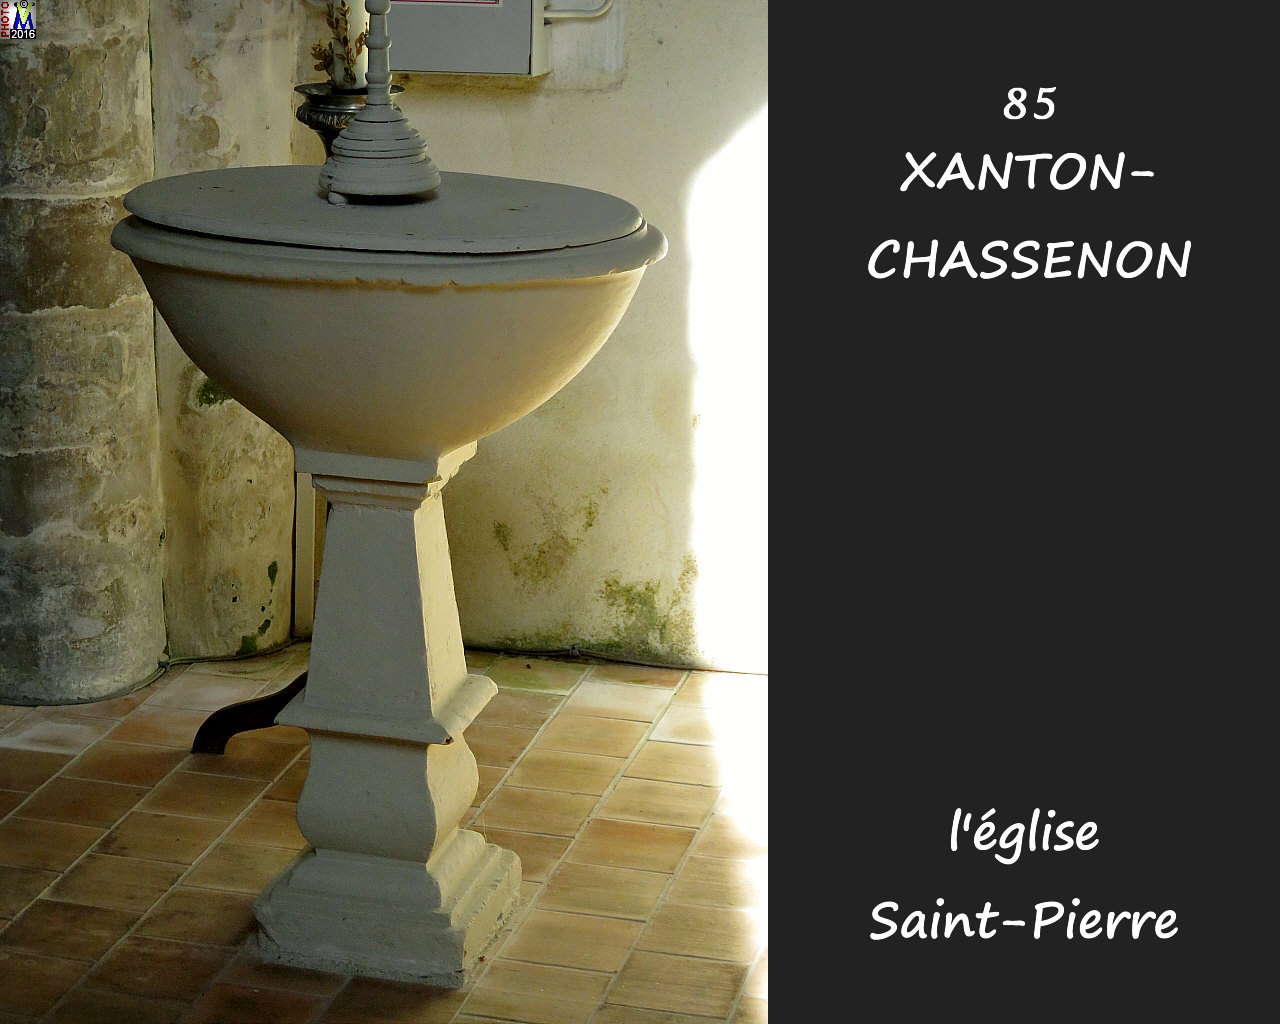 85XANTON-CHASSENON_eglise_1242.jpg